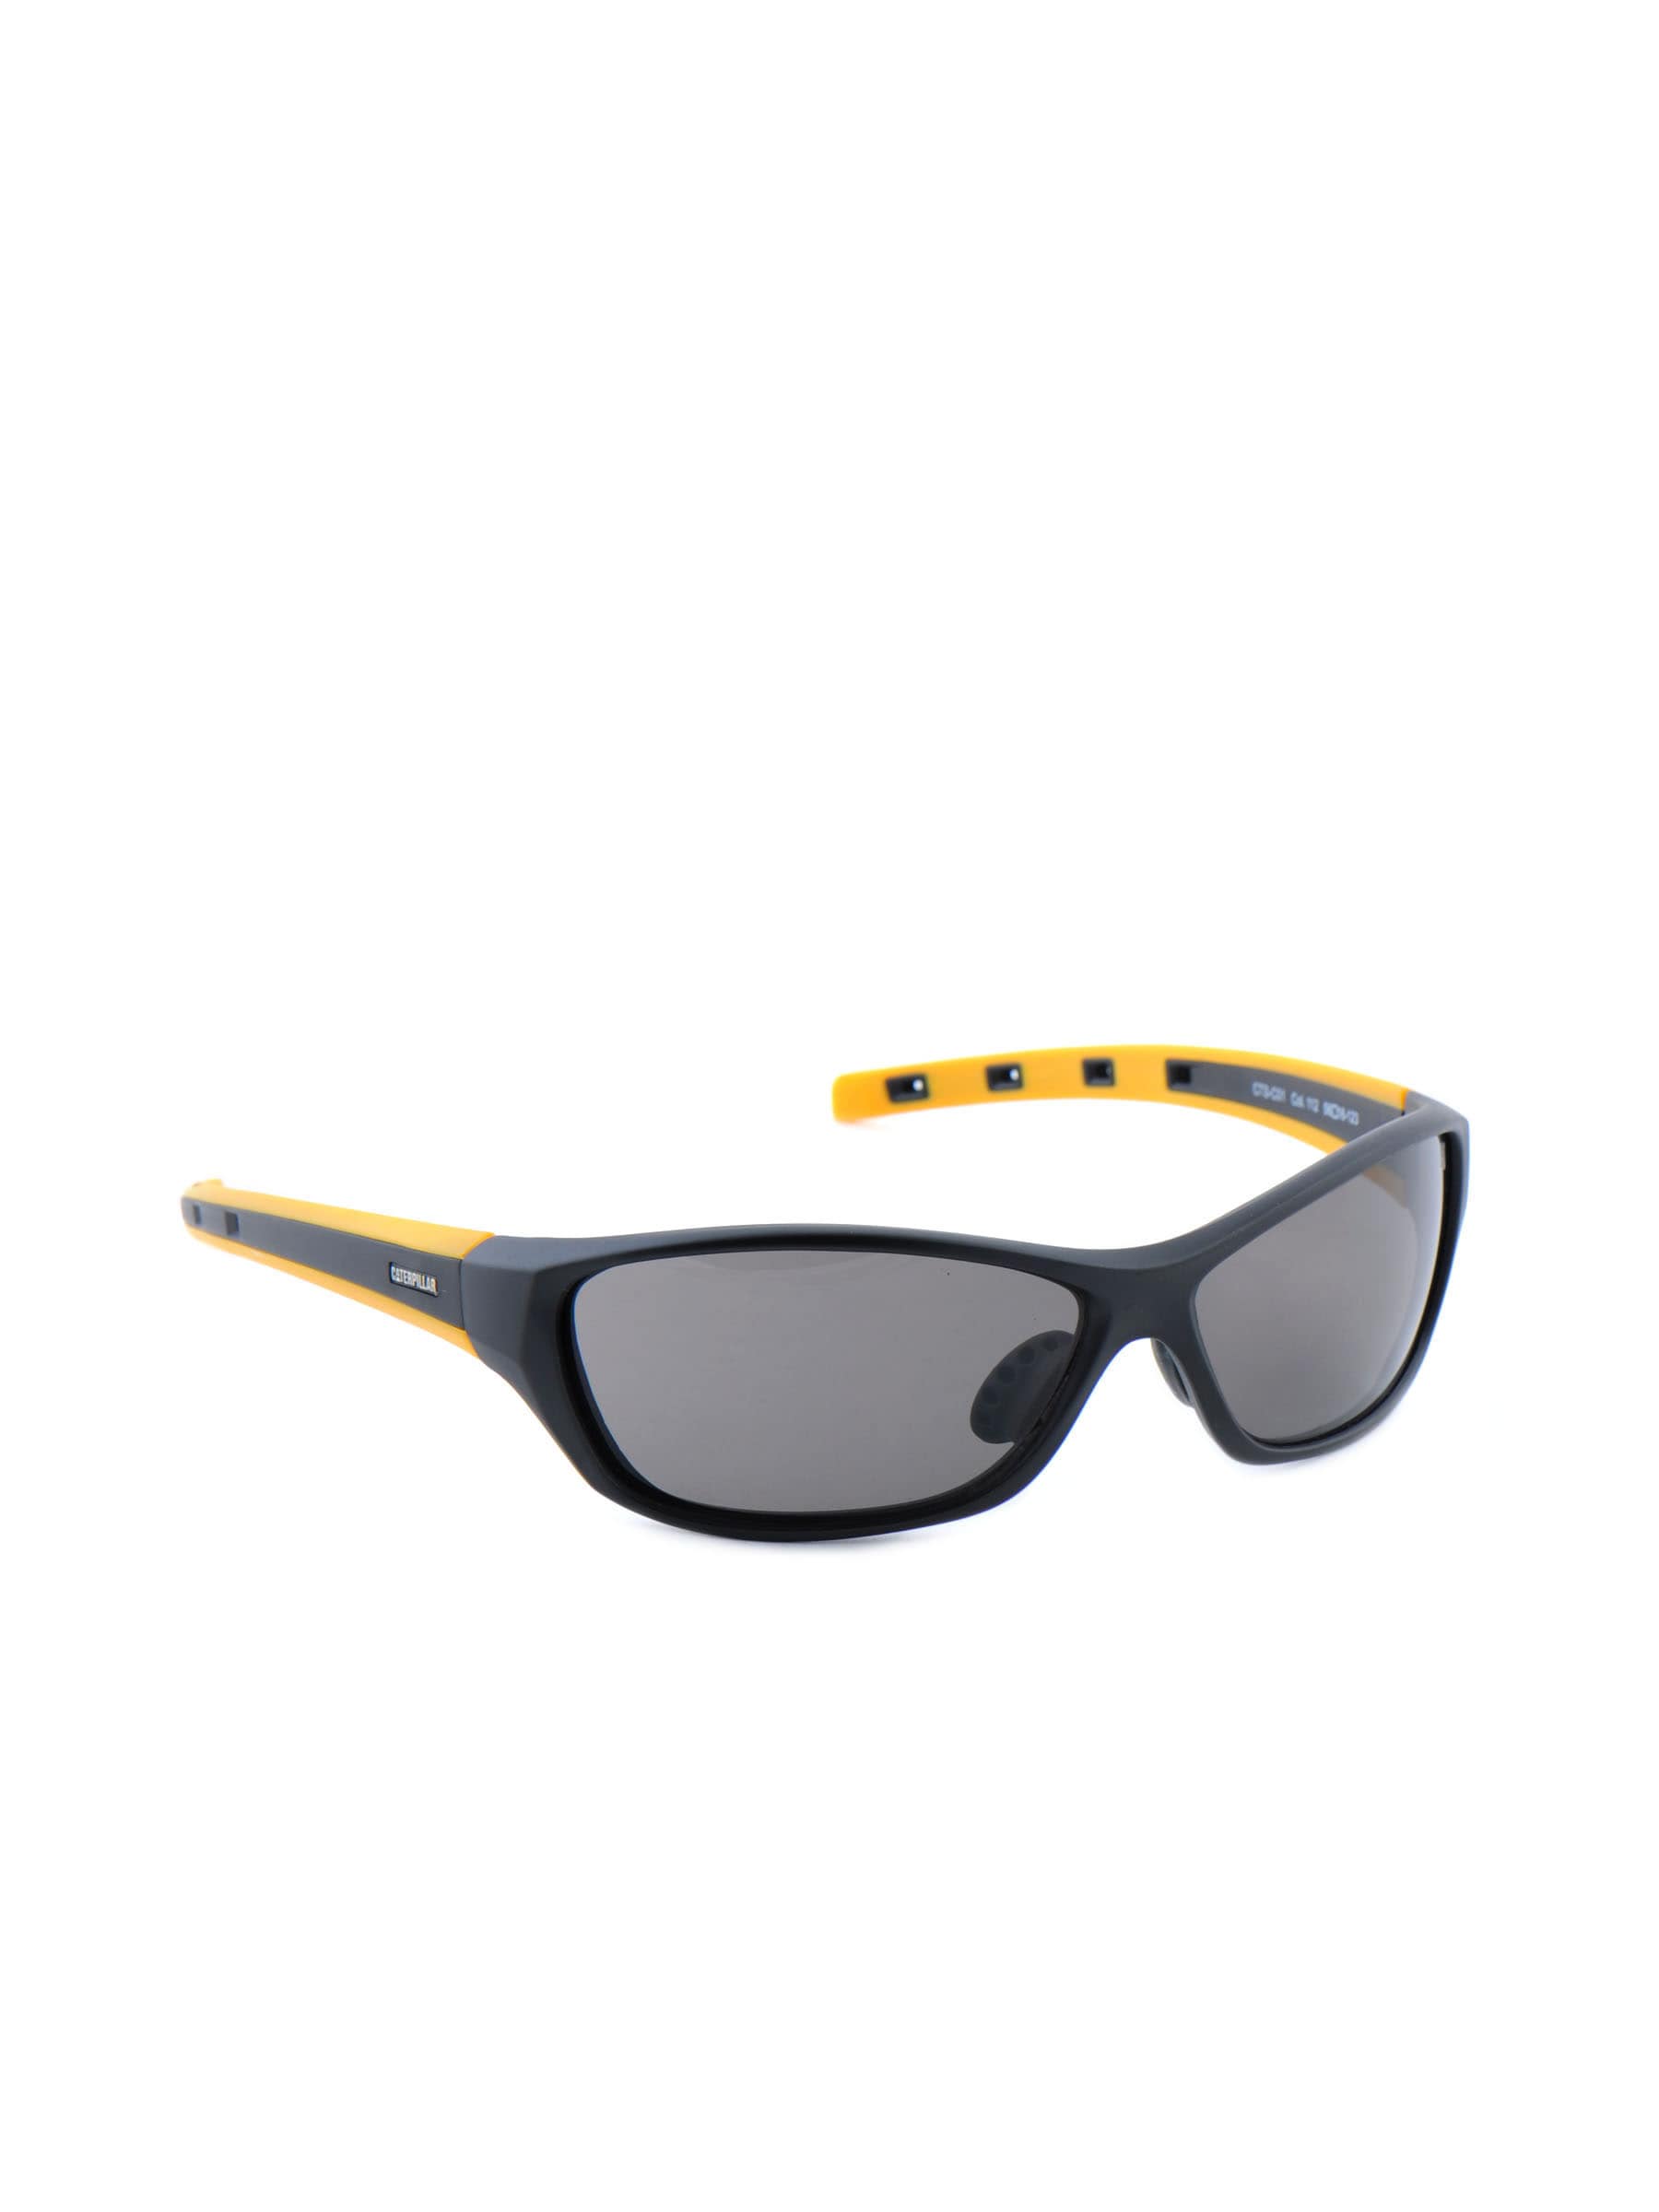 Cat Unisex Classic Black Sunglasses